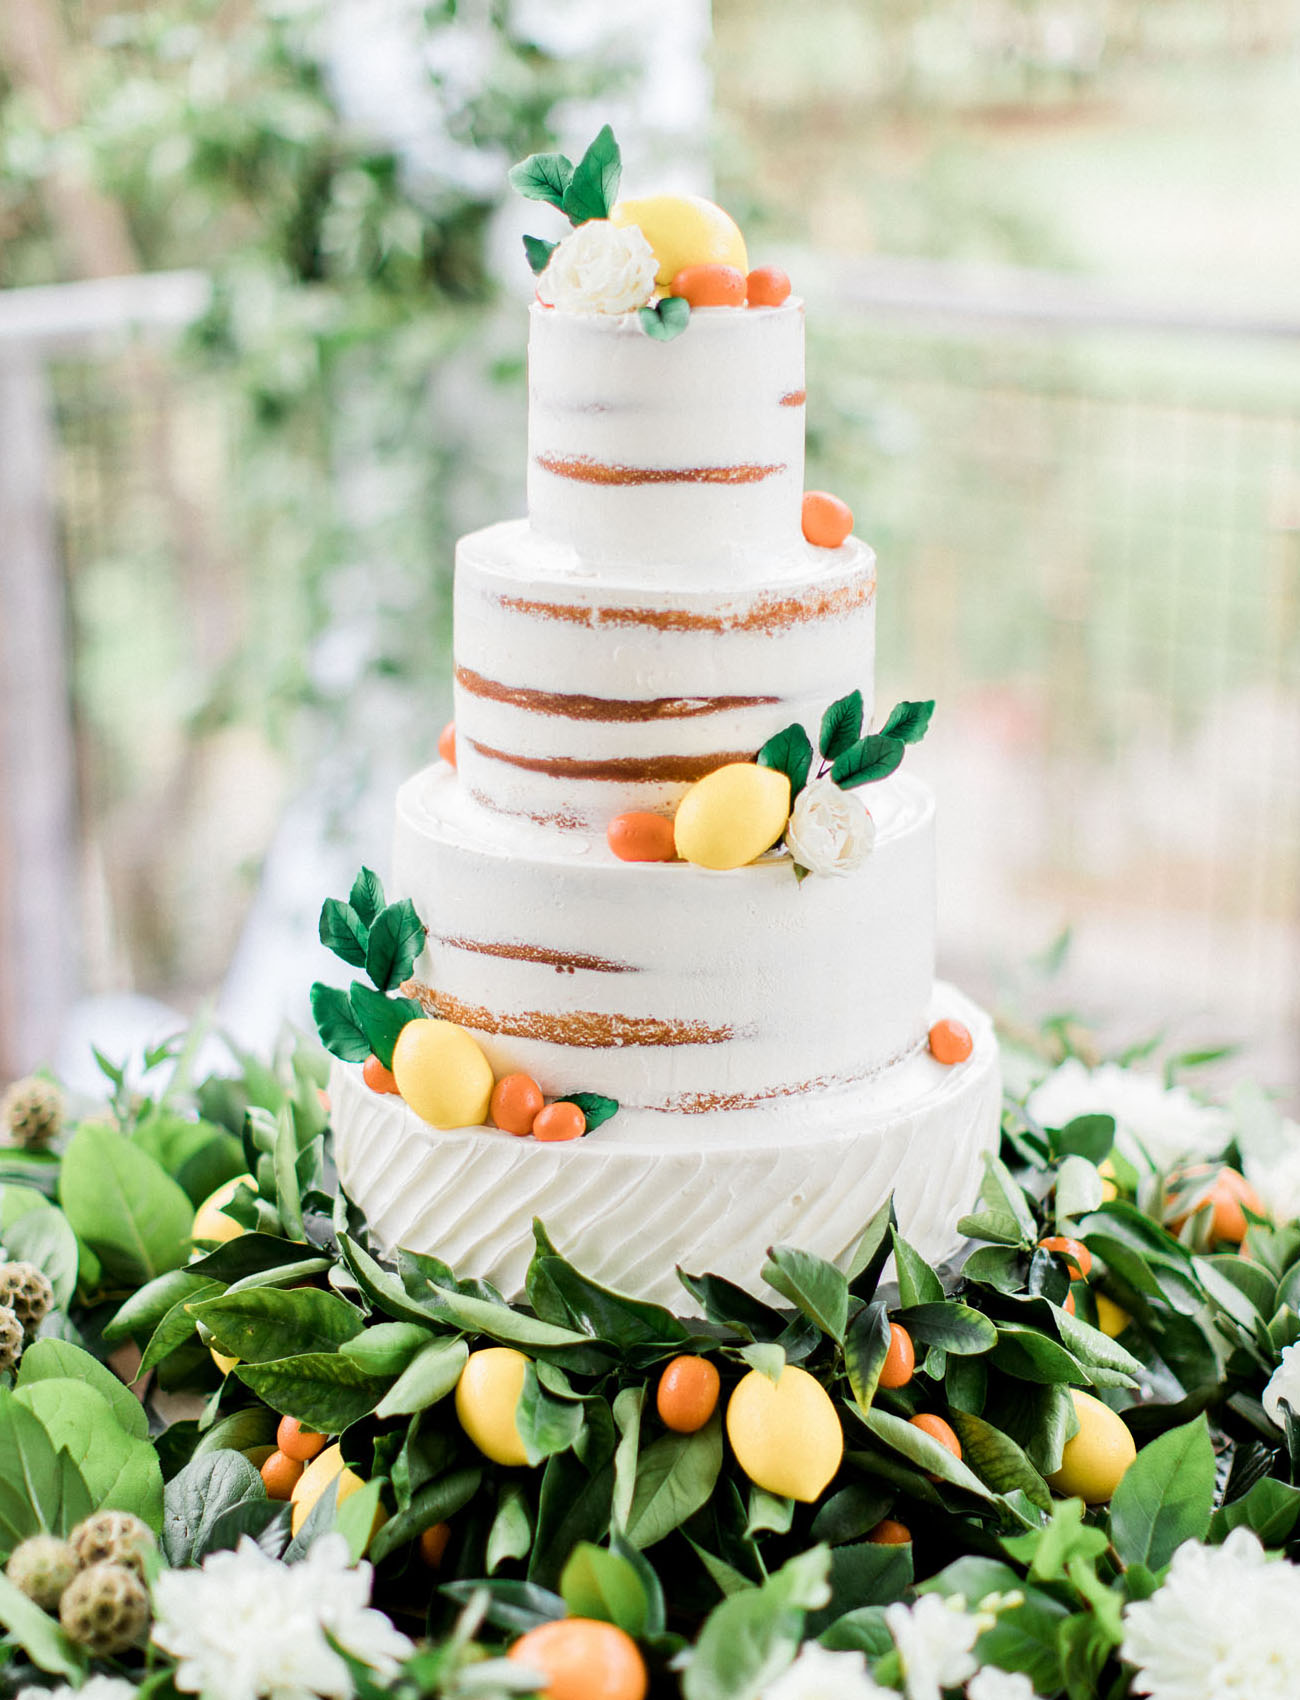 Os naked cakes continuam a ser uma opção de bolos de casamento muito procurada pelos noivos | Créditos: Brett Hickman Photographers